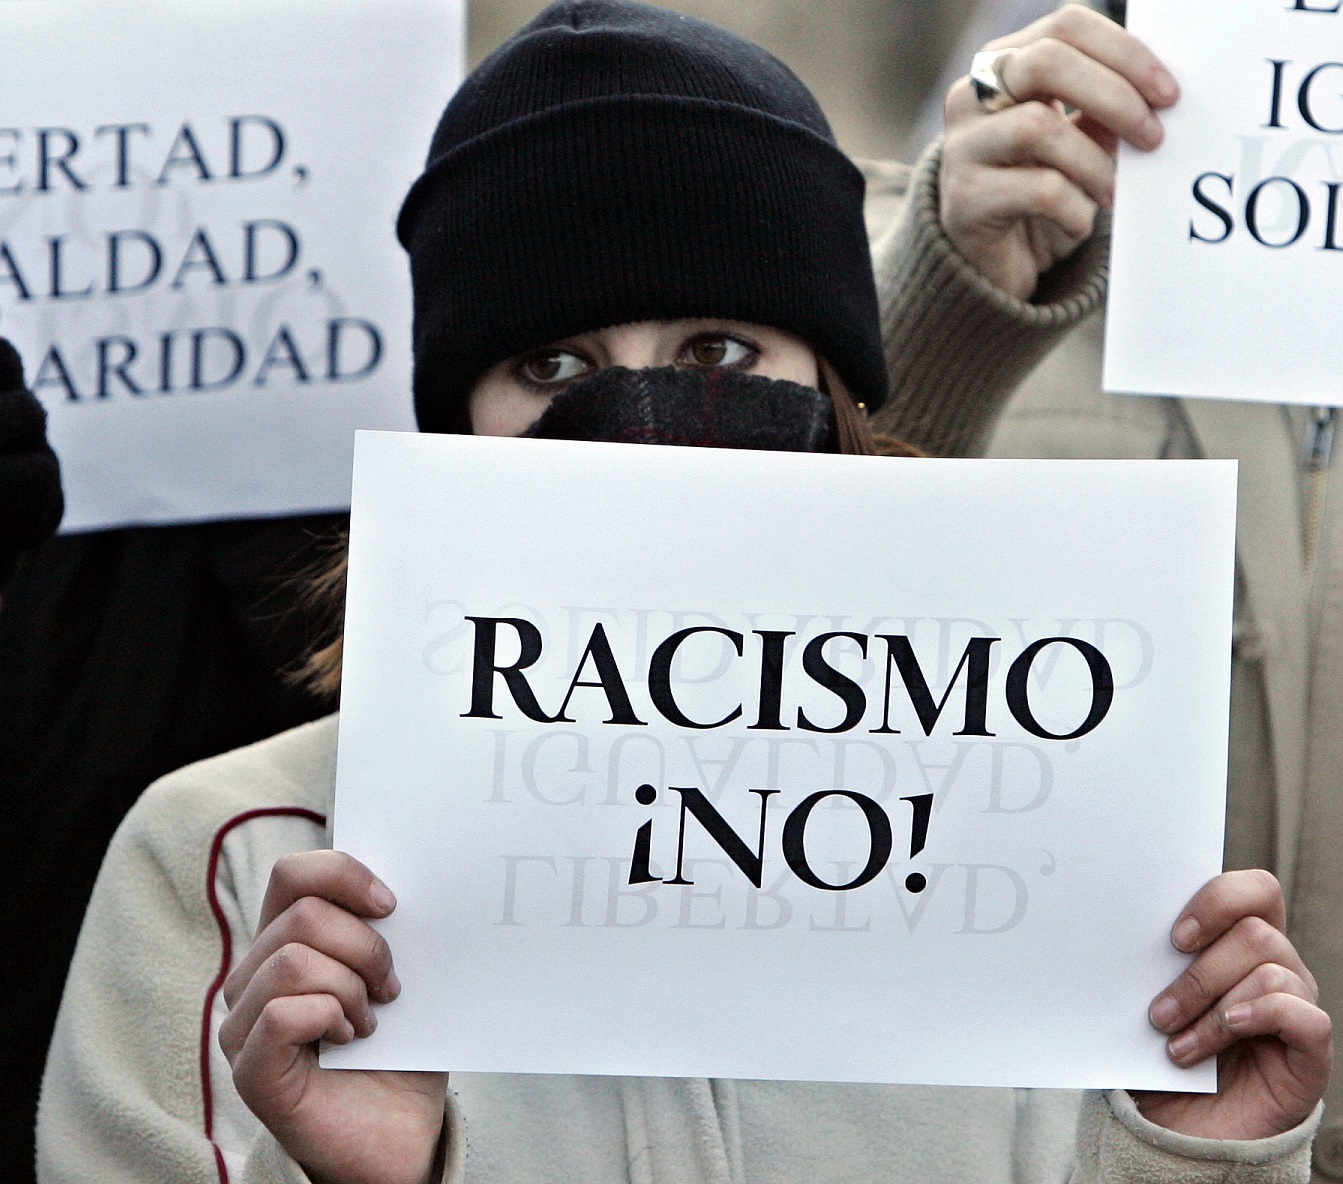 Una mujer posta una pancarta en la que se puede leer "Racismo ¡NO!" en una manifestación celebrada en Alcorcón en favor de los derechos humanos en...